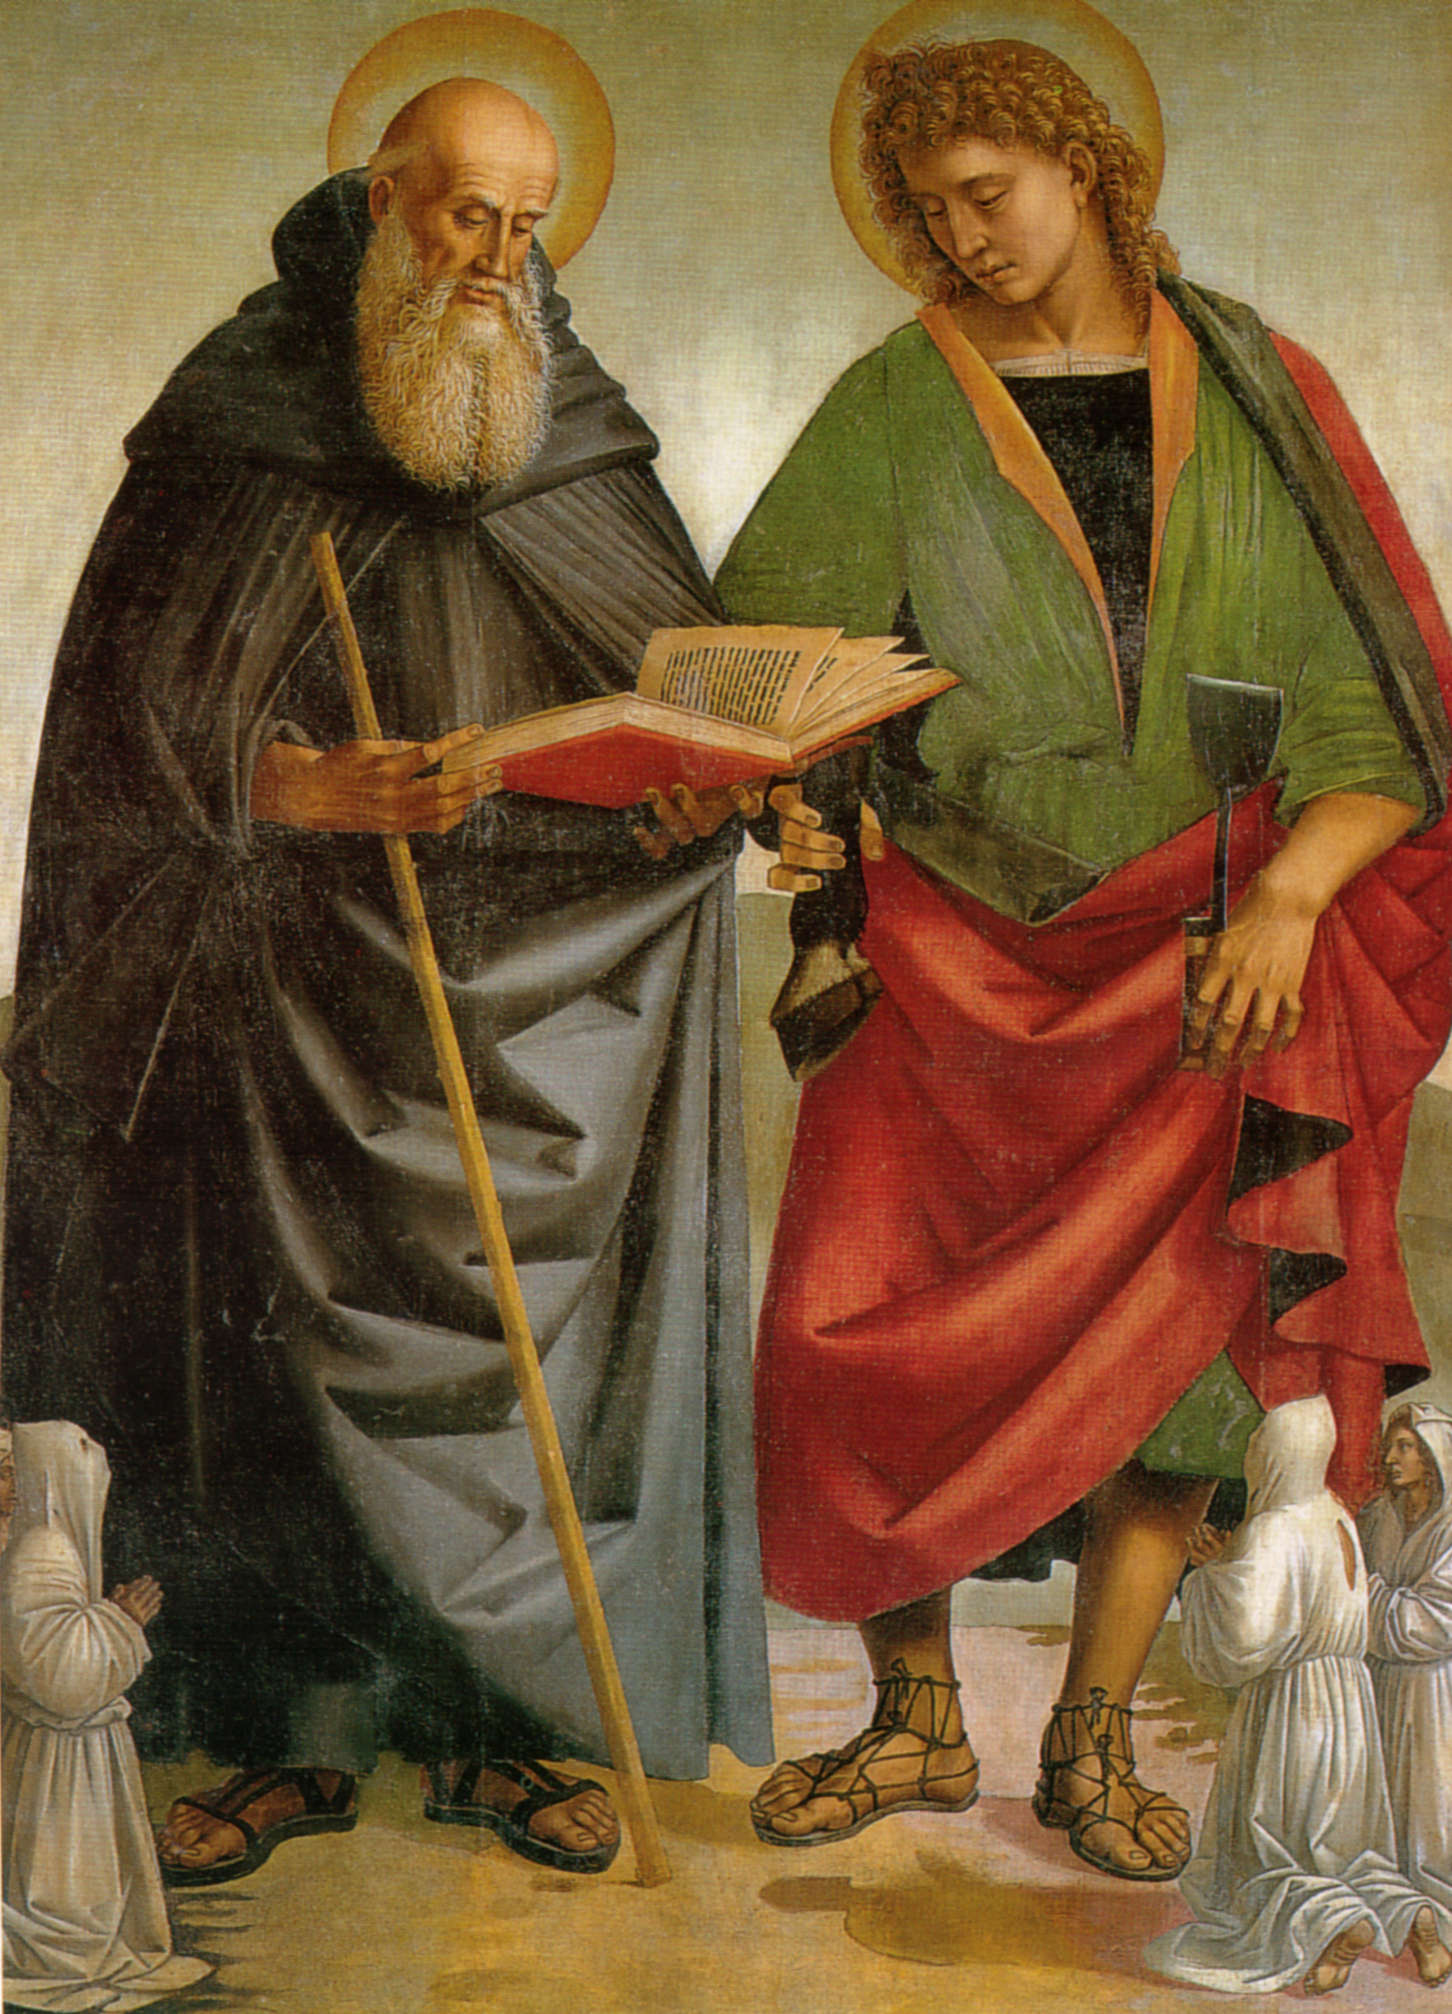 Luca Signorelli, Stendardo della Crocifissione, verso (c. 1502-1505; tempera on canvas, 212 x 157 cm; Sansepolcro, church of Sant'Antonio Abate)